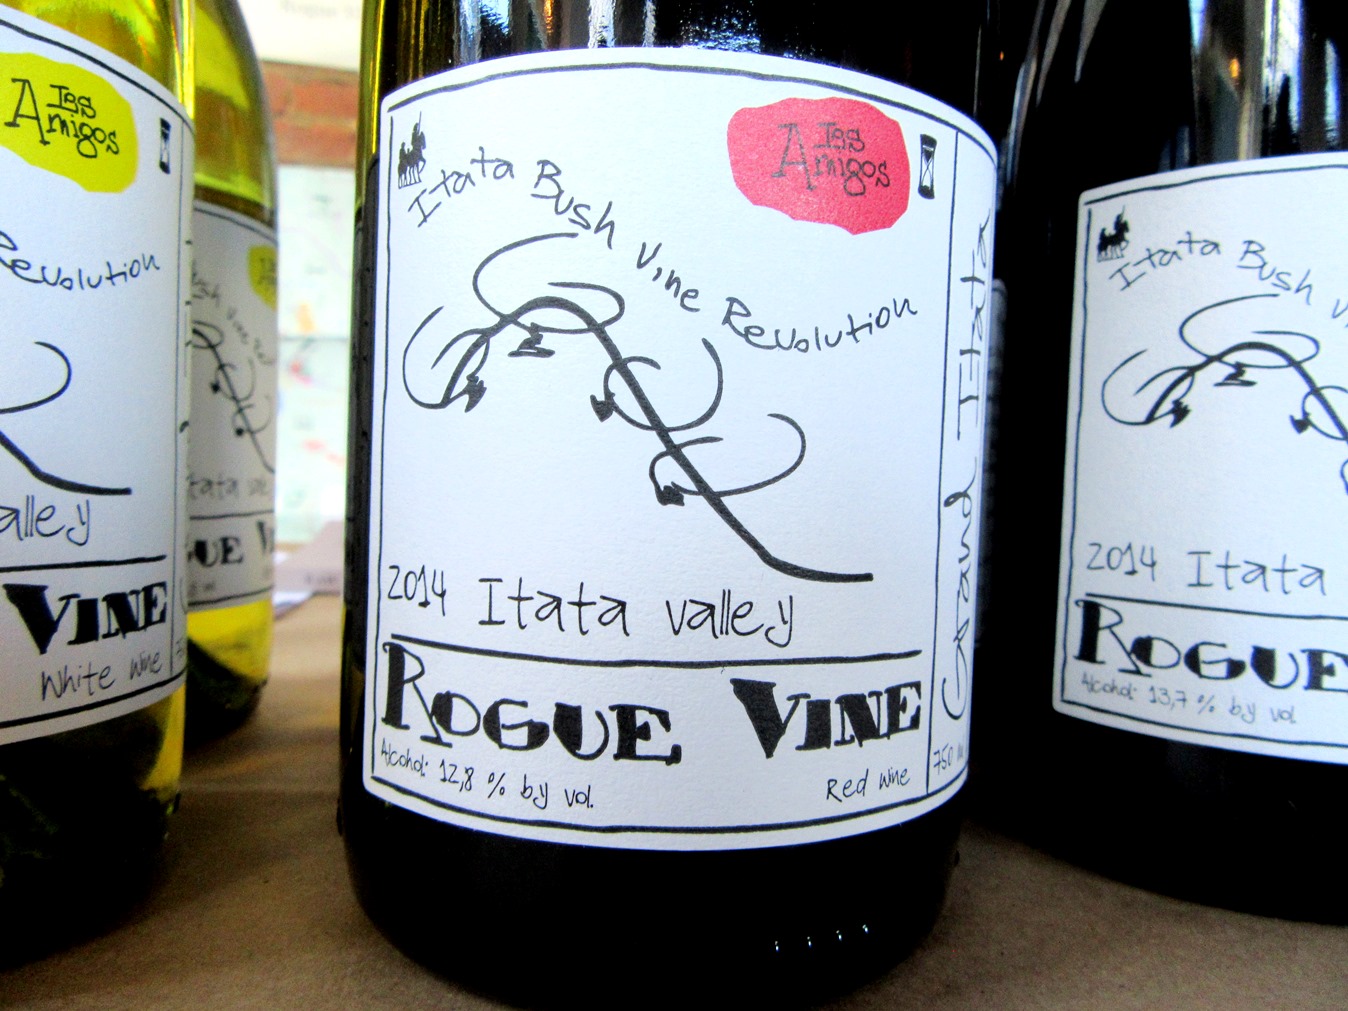 Rogue Vine, Grand Itata Tinto 2014, Itata Valley, Chile, Wine Casual